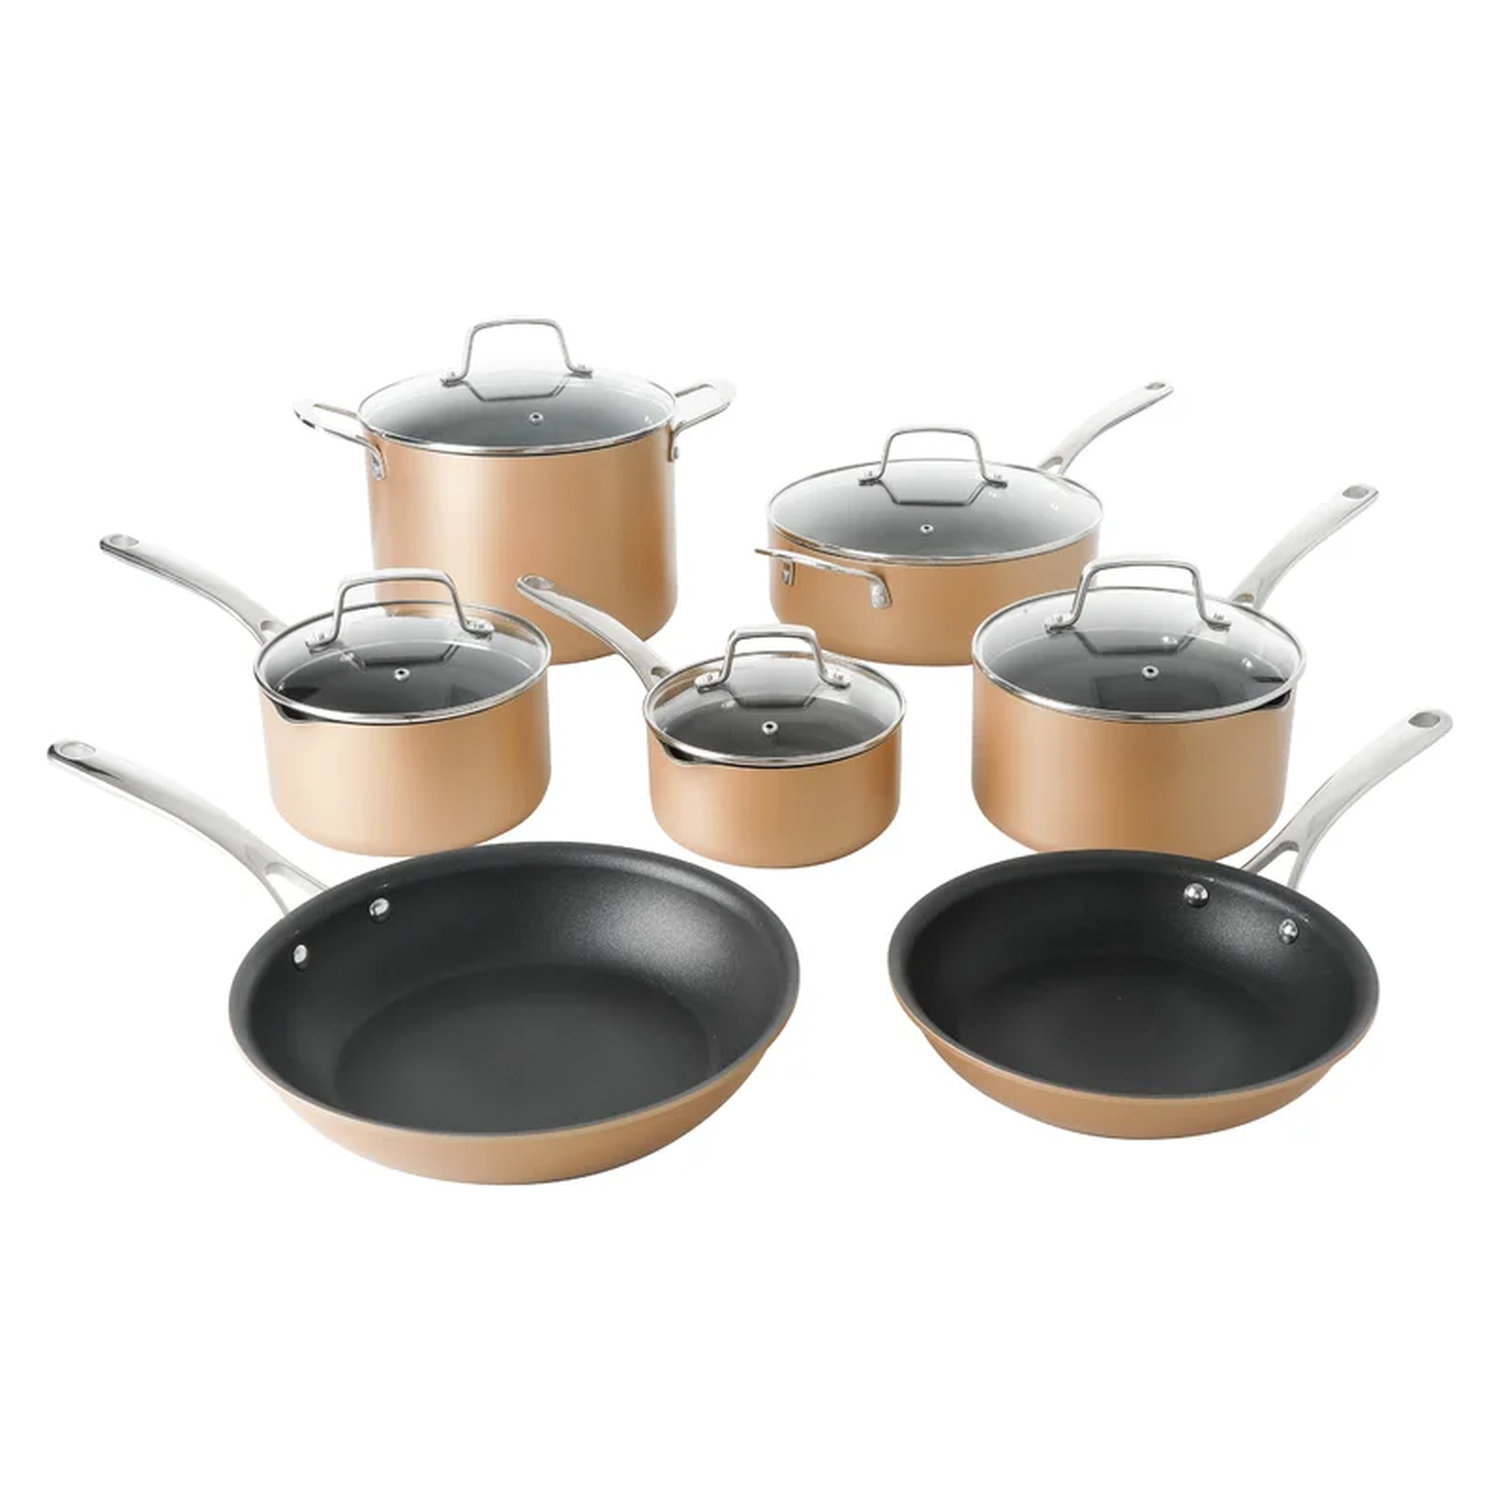 https://assets.wfcdn.com/im/40841415/compr-r85/2224/222411825/martha-stewart-12-pieces-aluminum-non-stick-cookware-set.jpg